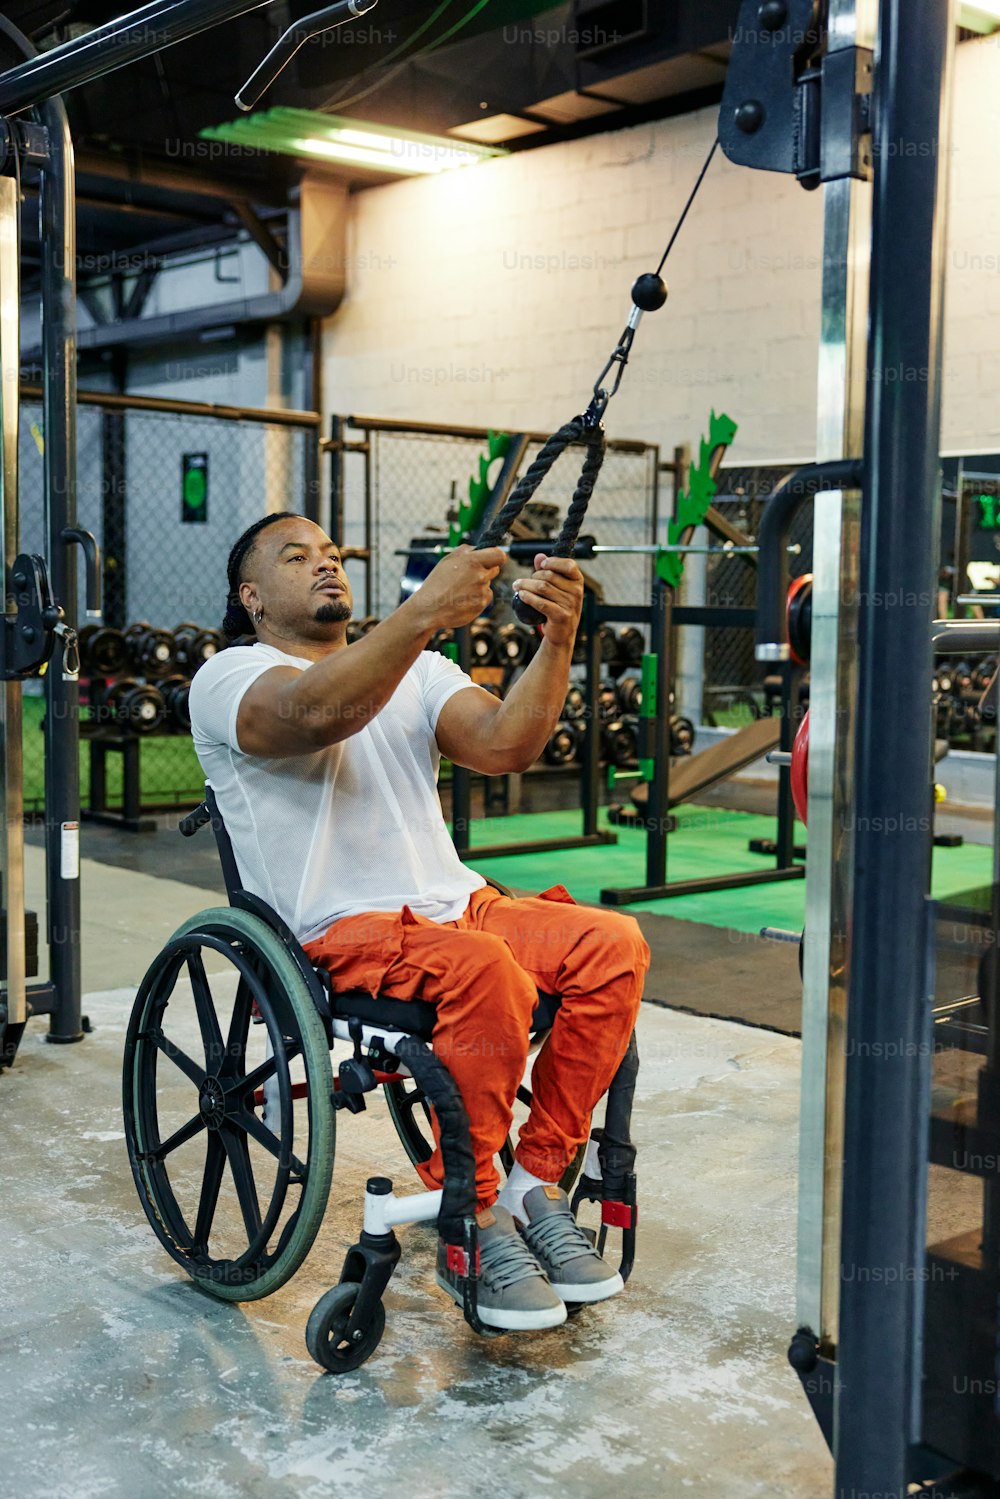 Un hombre en una silla de ruedas sosteniéndose de una barra